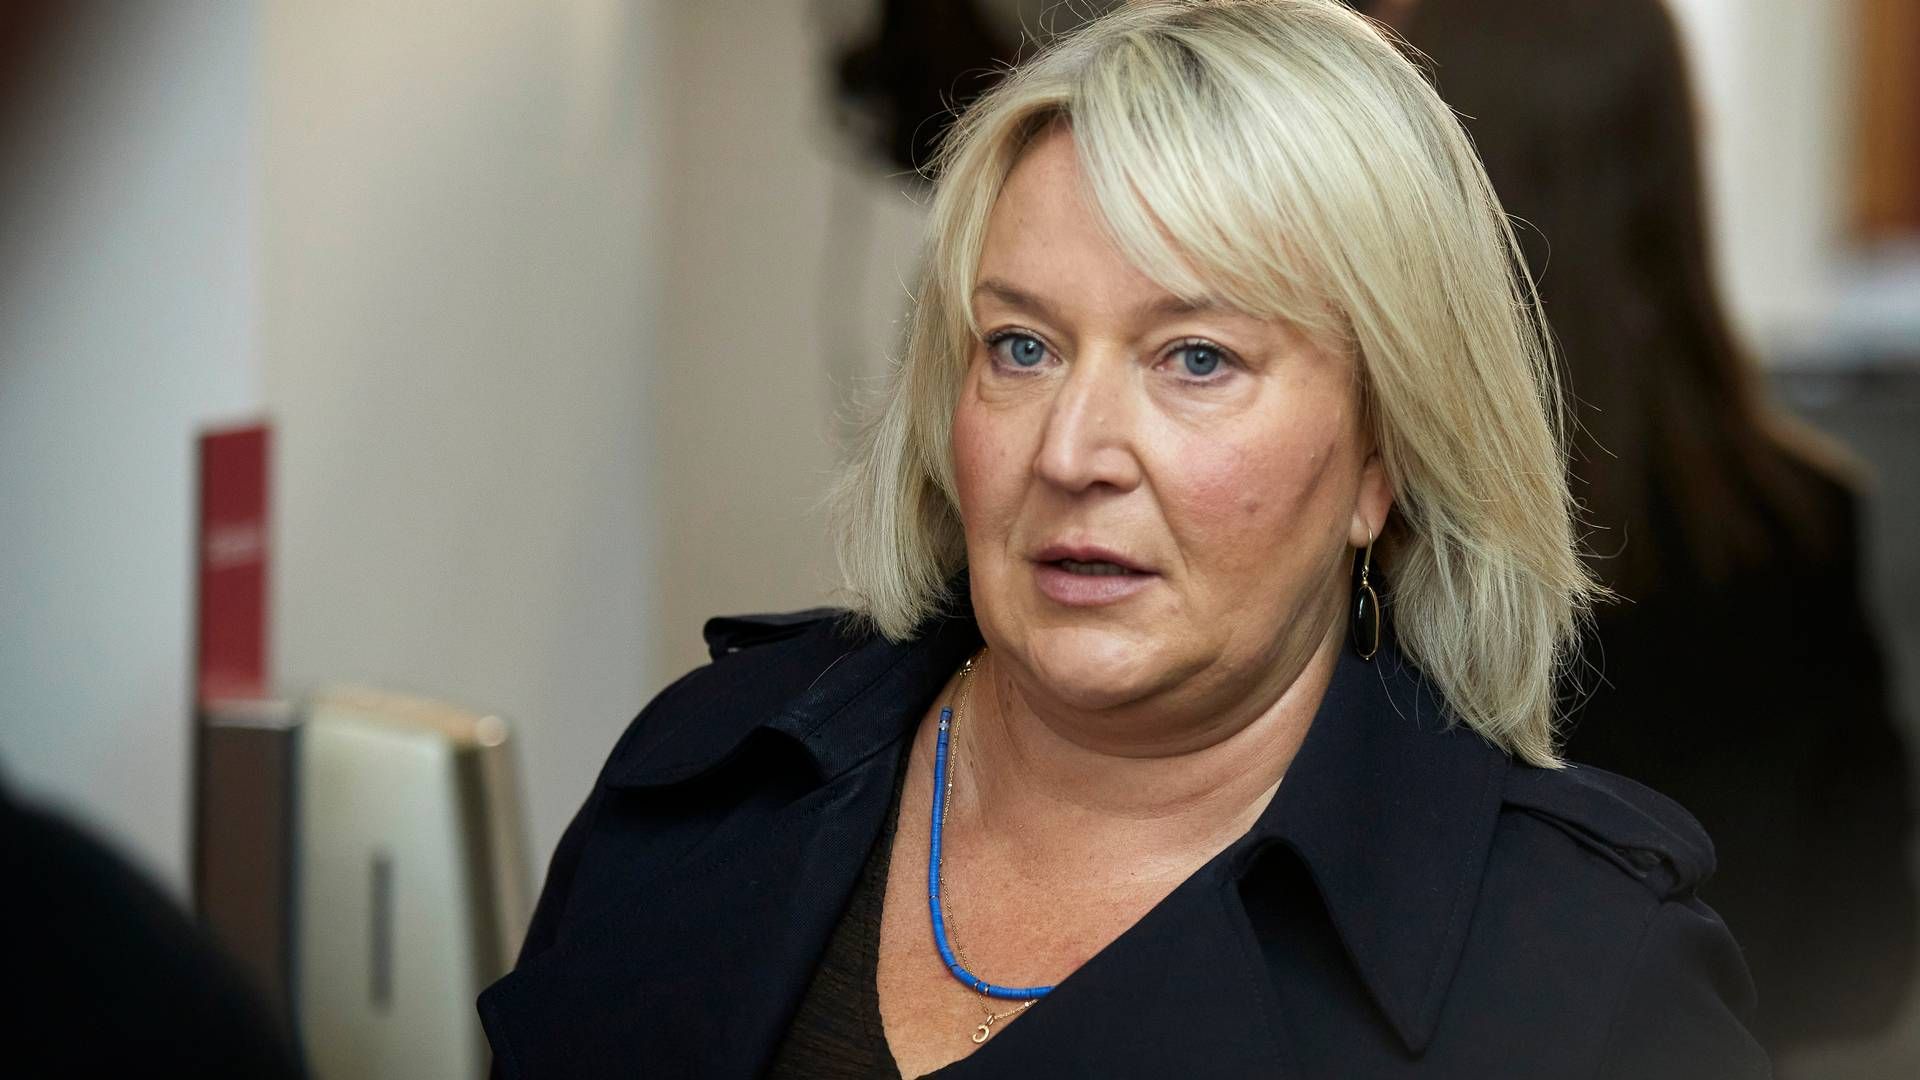 Udannelses- og Forskningsminister Christina Egelund har fået ny pressechef. | Foto: Jens Dresling